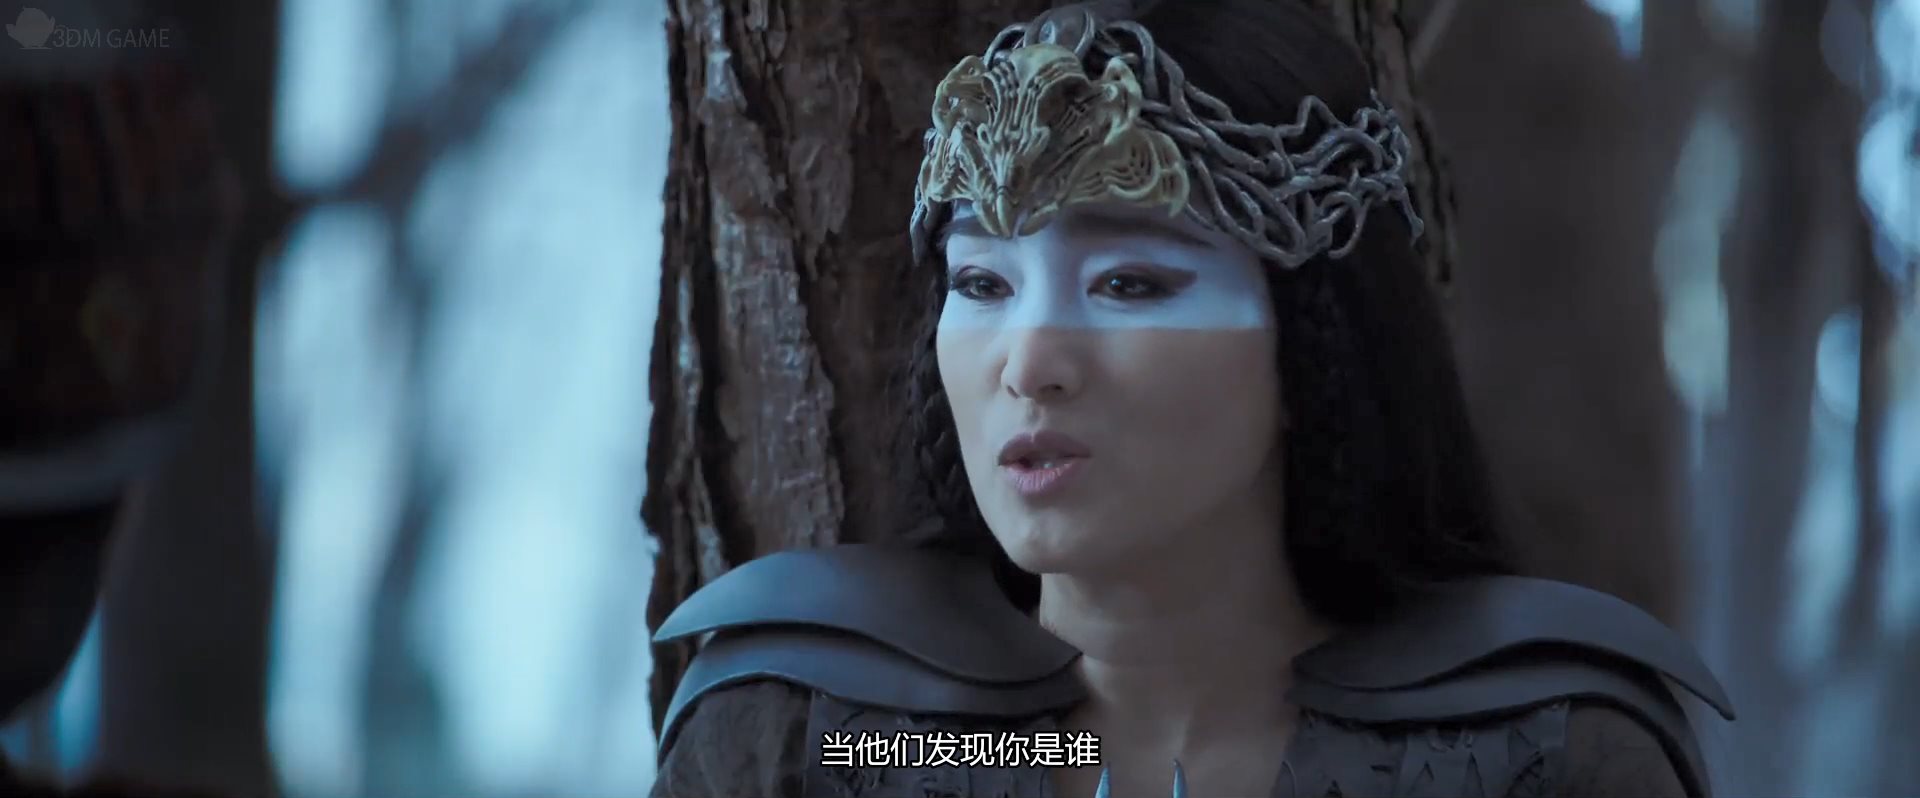 迪士尼《花木兰》30秒中文预告 李连杰、巩俐出境